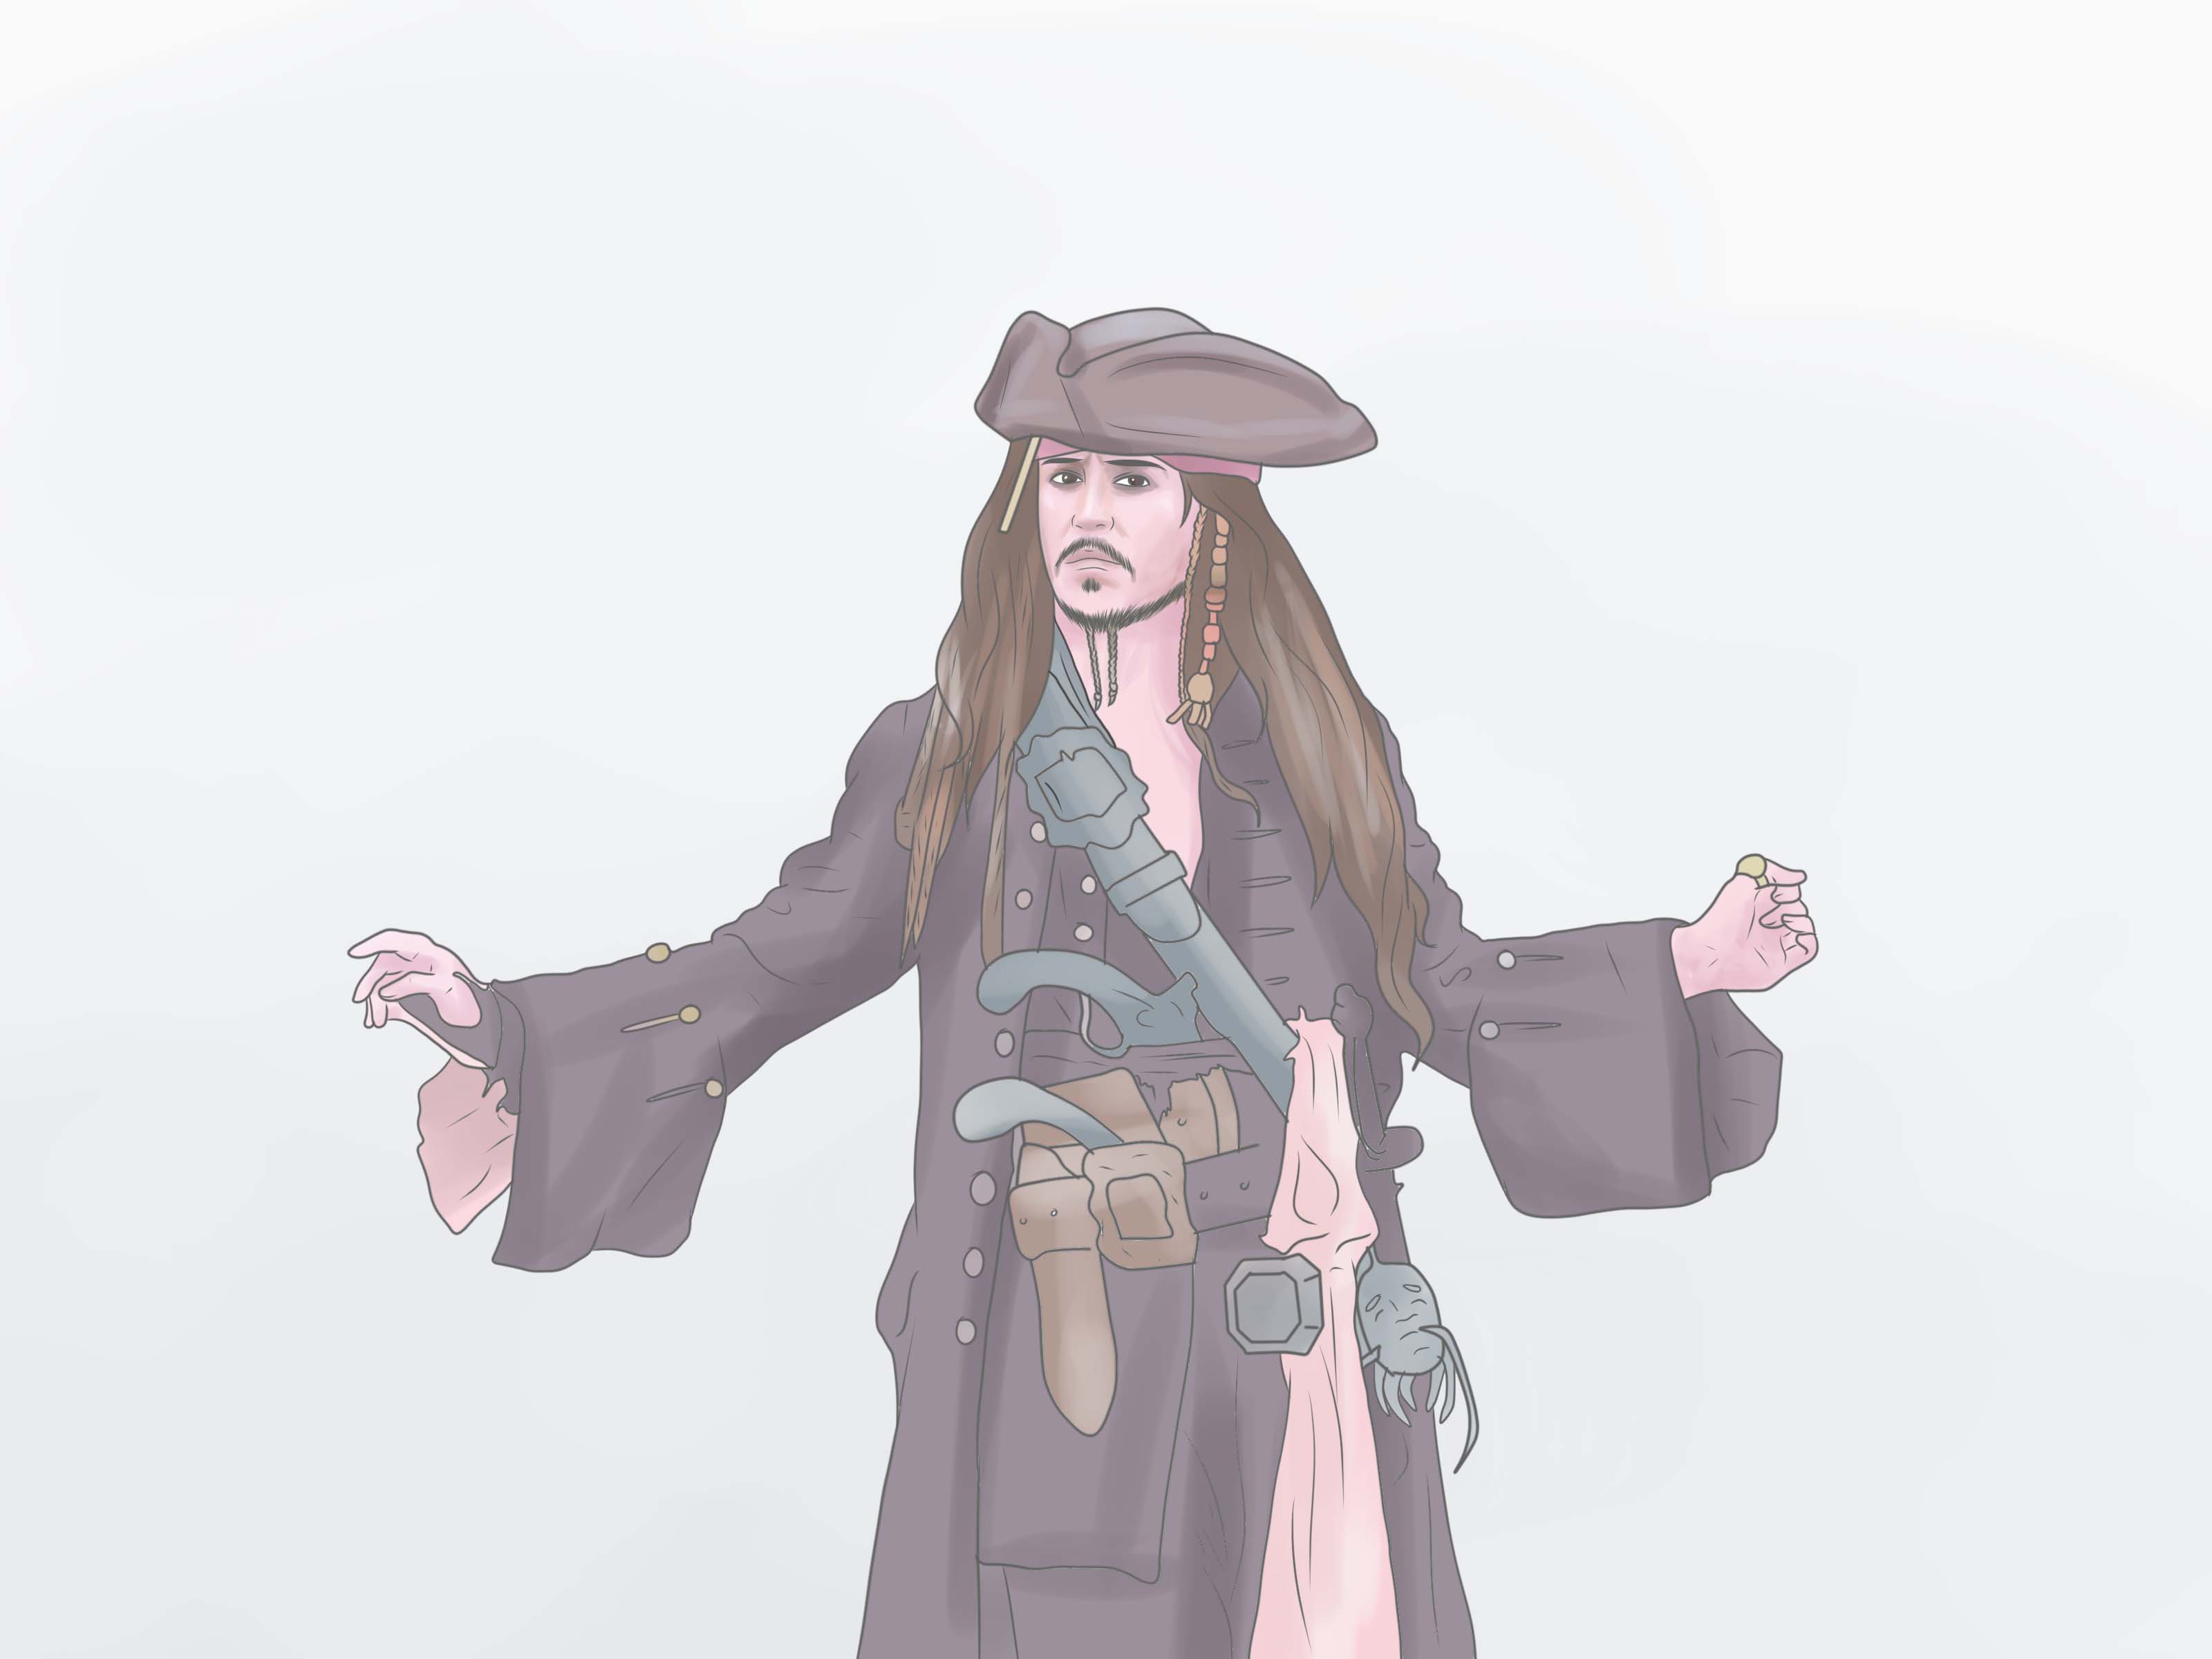 Jack Sparrow Live Wallpaper - Cartoon - 3200x2400 Wallpaper 